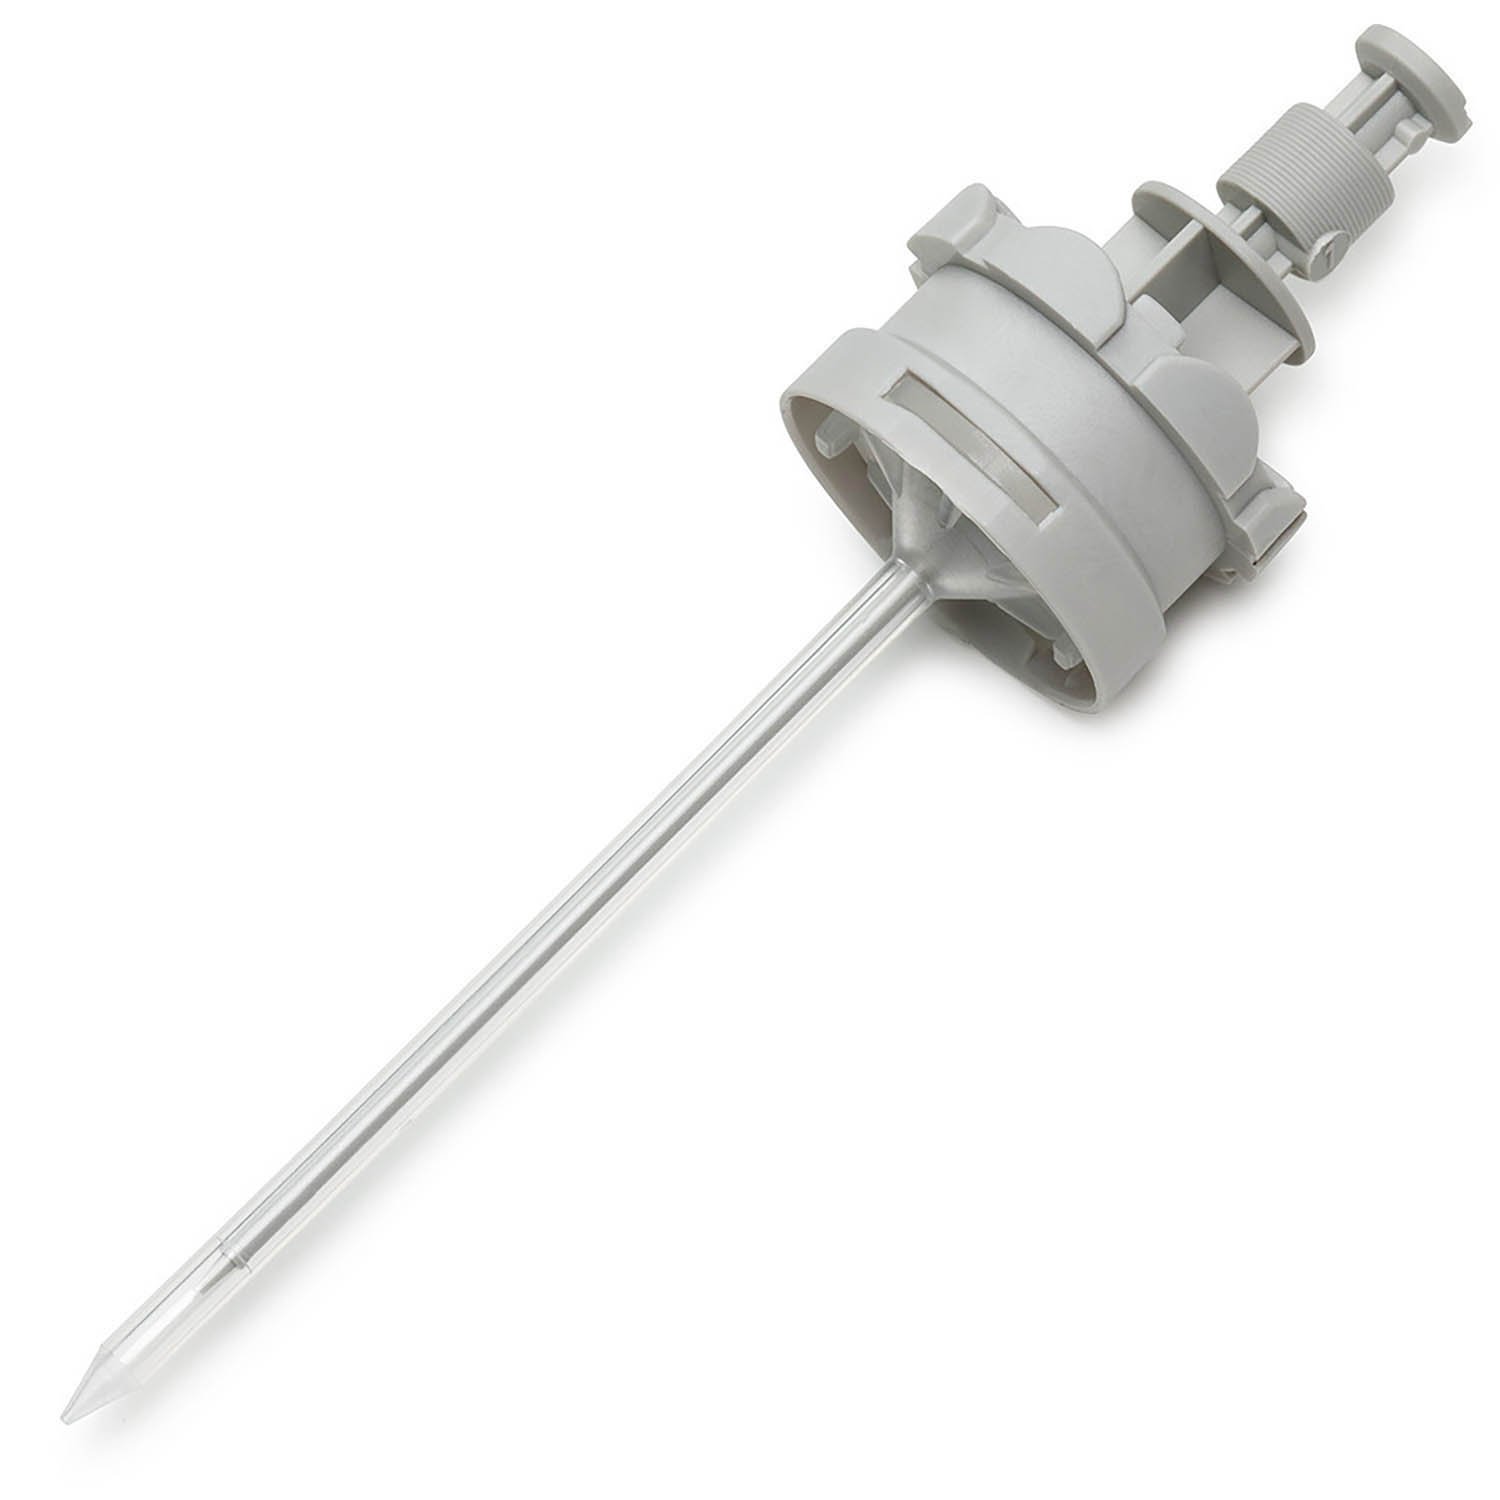 RV-Pette PRO Dispenser Syringe Tip for Repeat Volume Pipettors - Sterile, 0.1mL, Box of 100